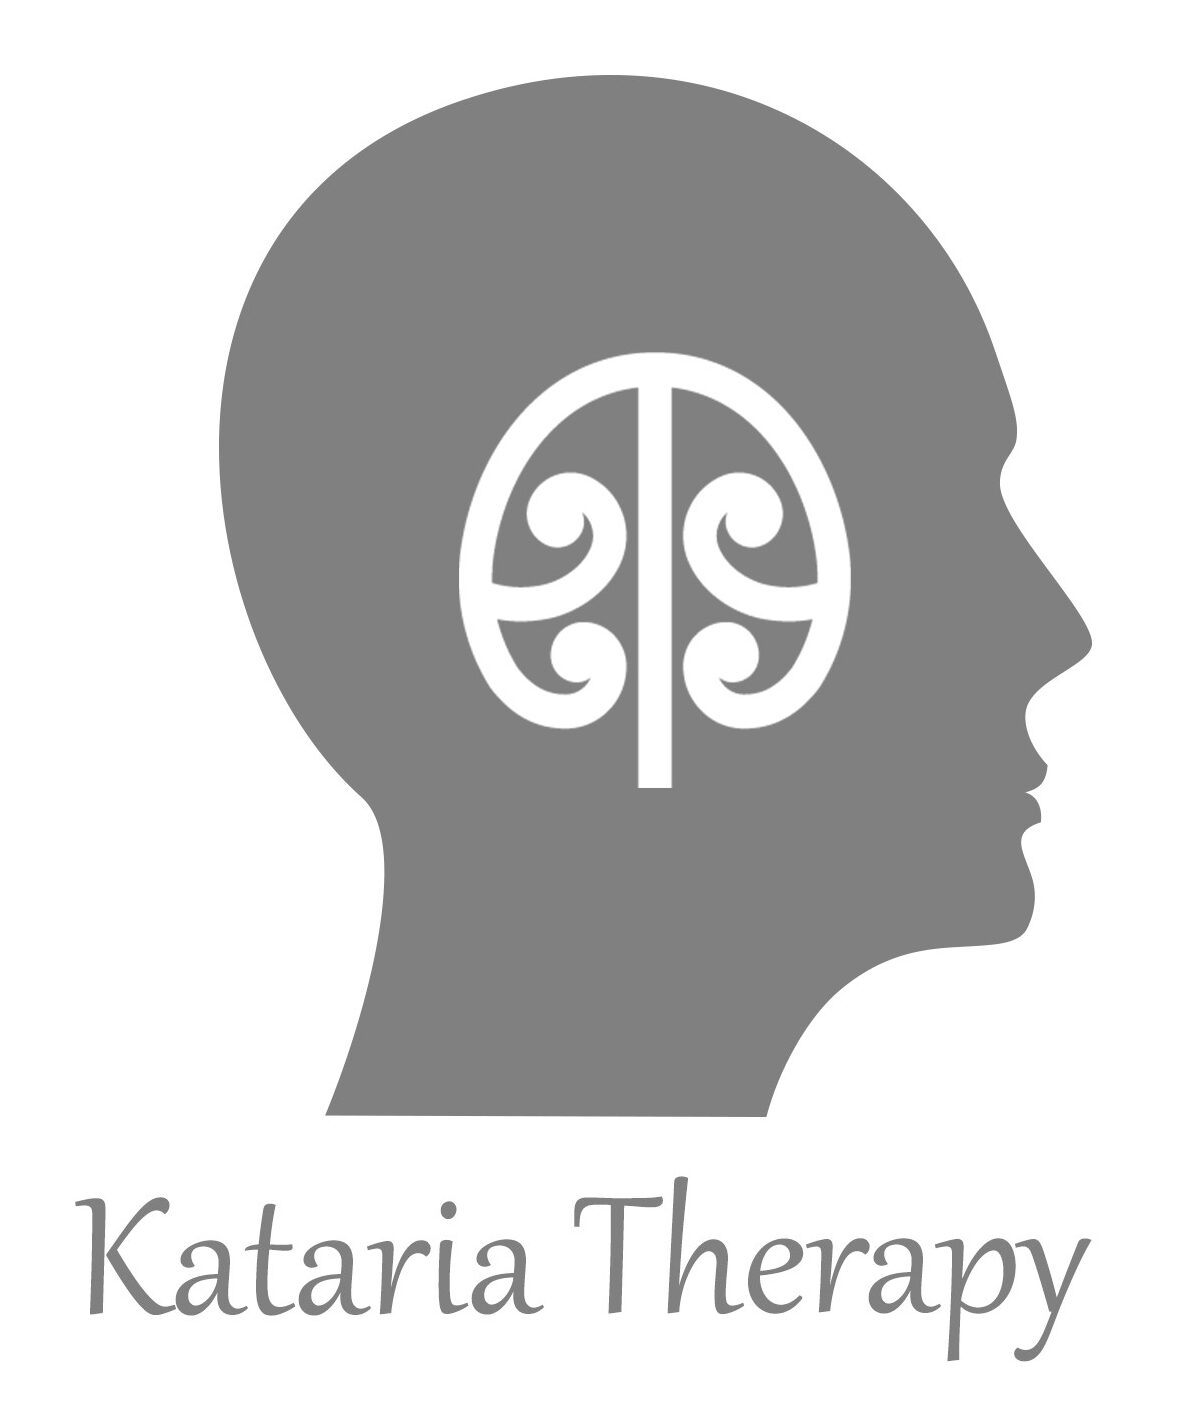 Kataria Therapy